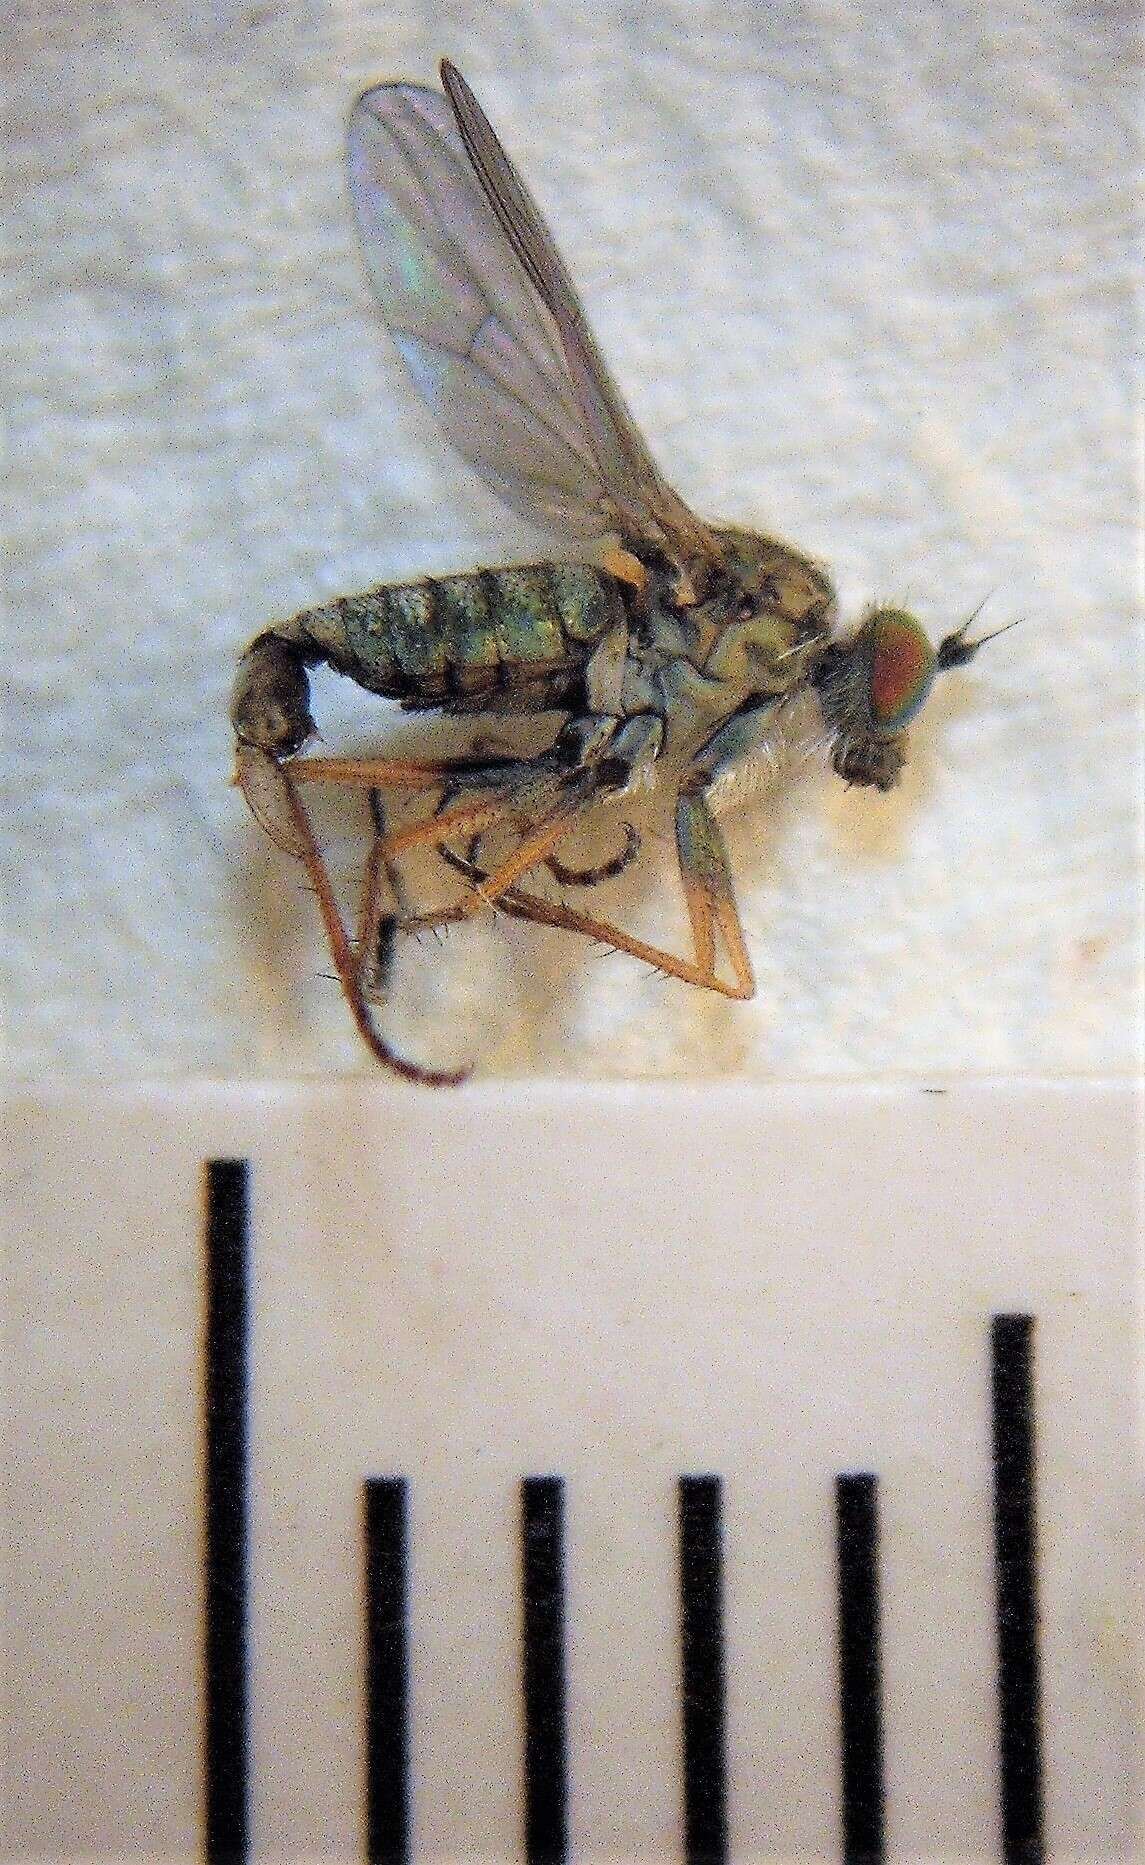 Image of Scorpiurus thorpei Masunaga 2017